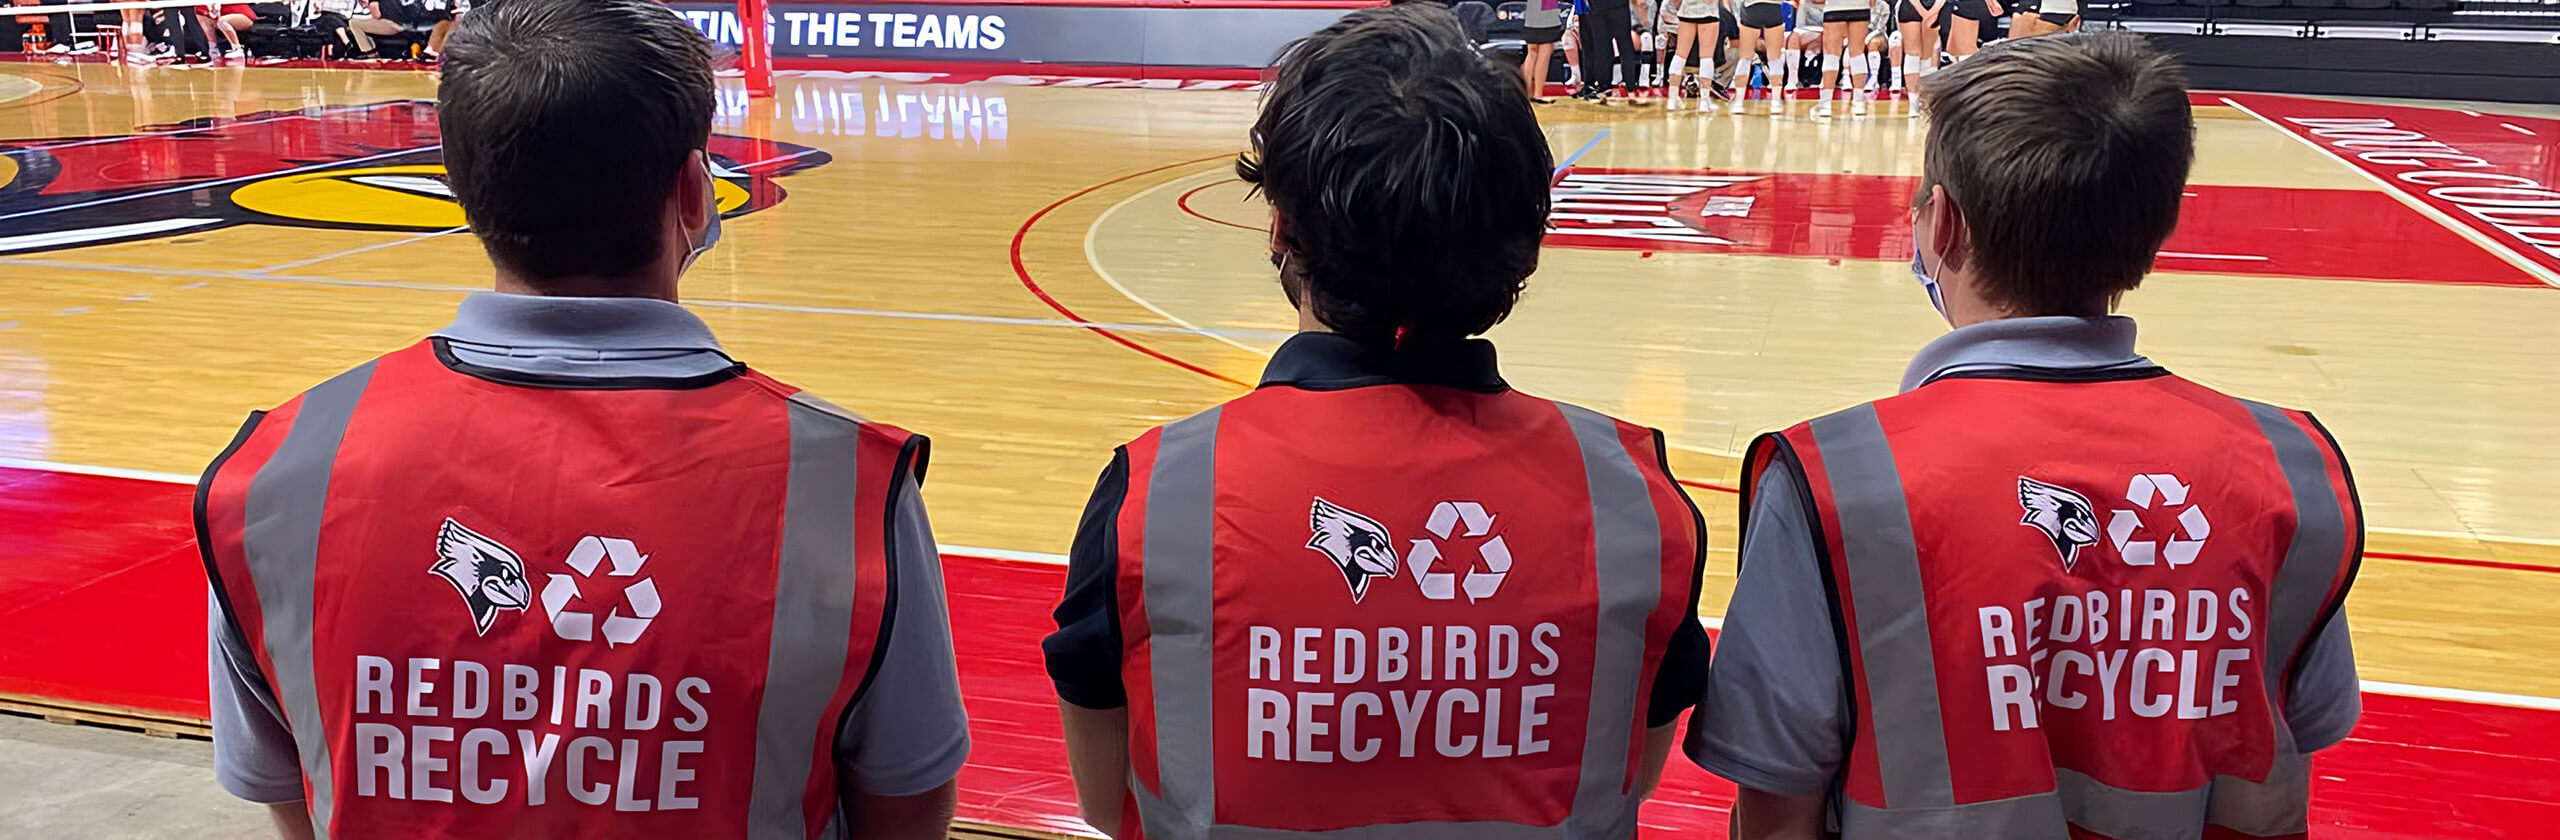 三名红鸟回收的成员一起站在红鸟竞技场的一场篮球比赛中。